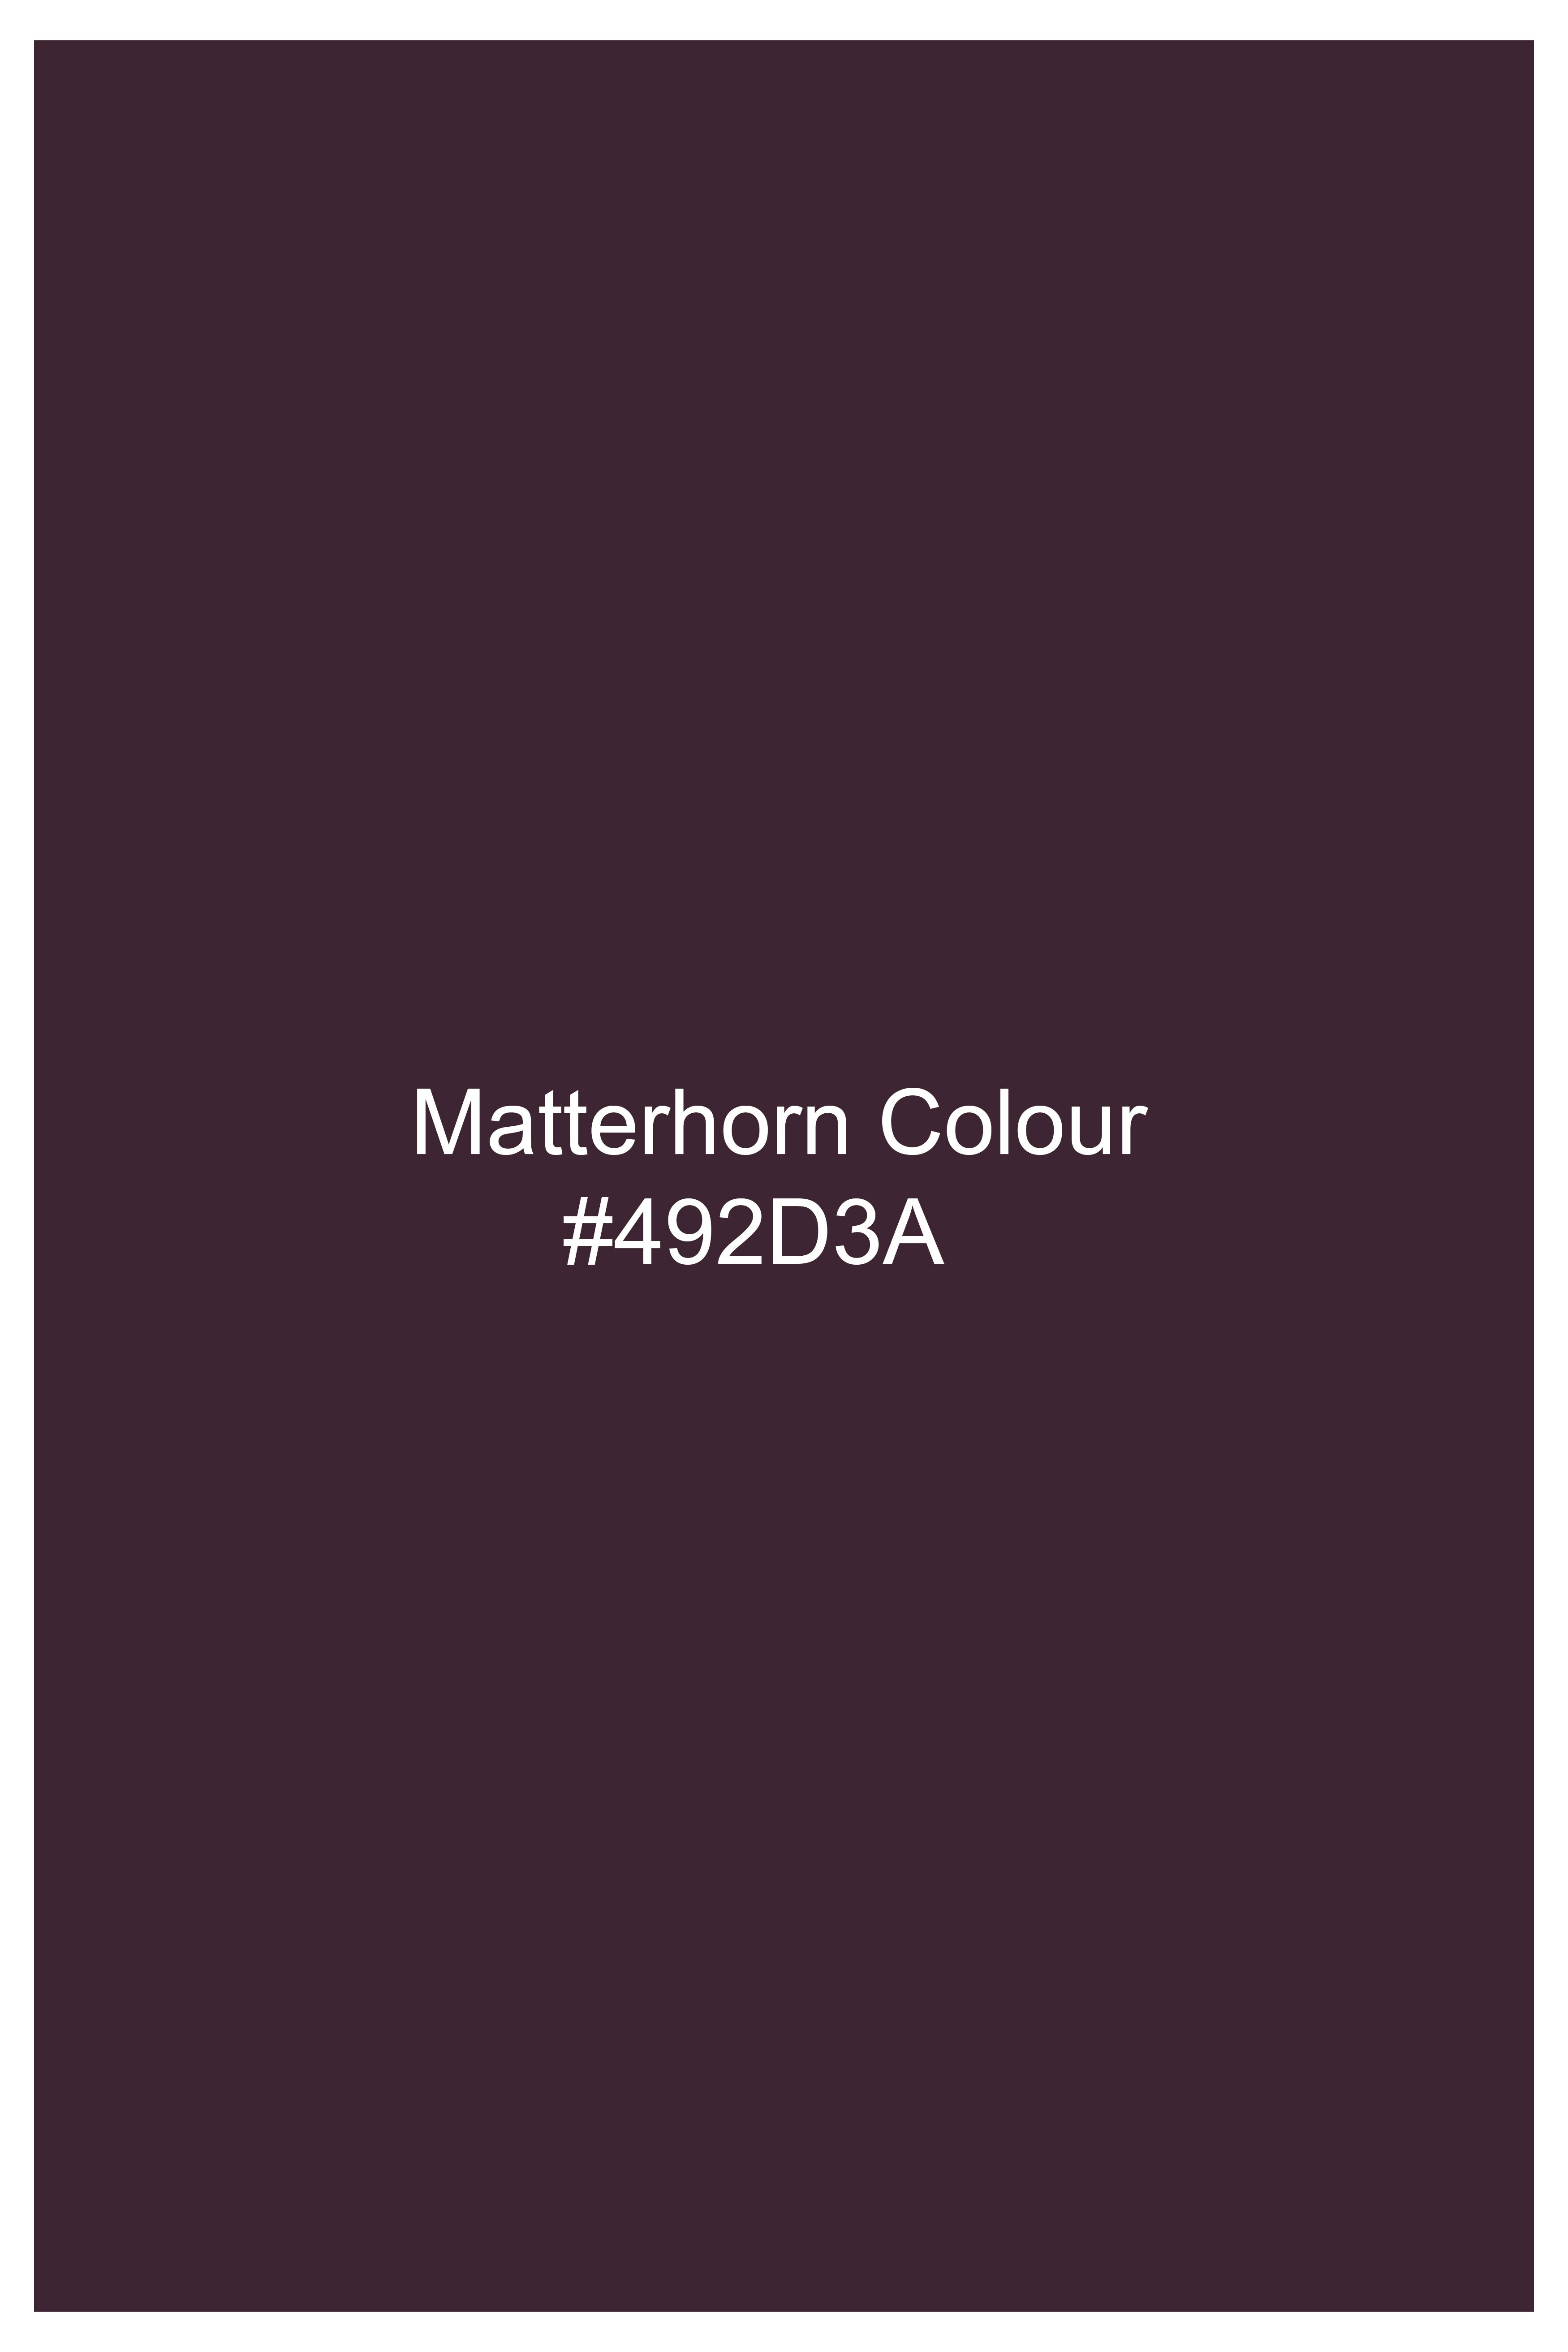 Matterhorn Maroon Wool Rich Pant T2755-28, T2755-30, T2755-32, T2755-34, T2755-36, T2755-38, T2755-40, T2755-42, T2755-44